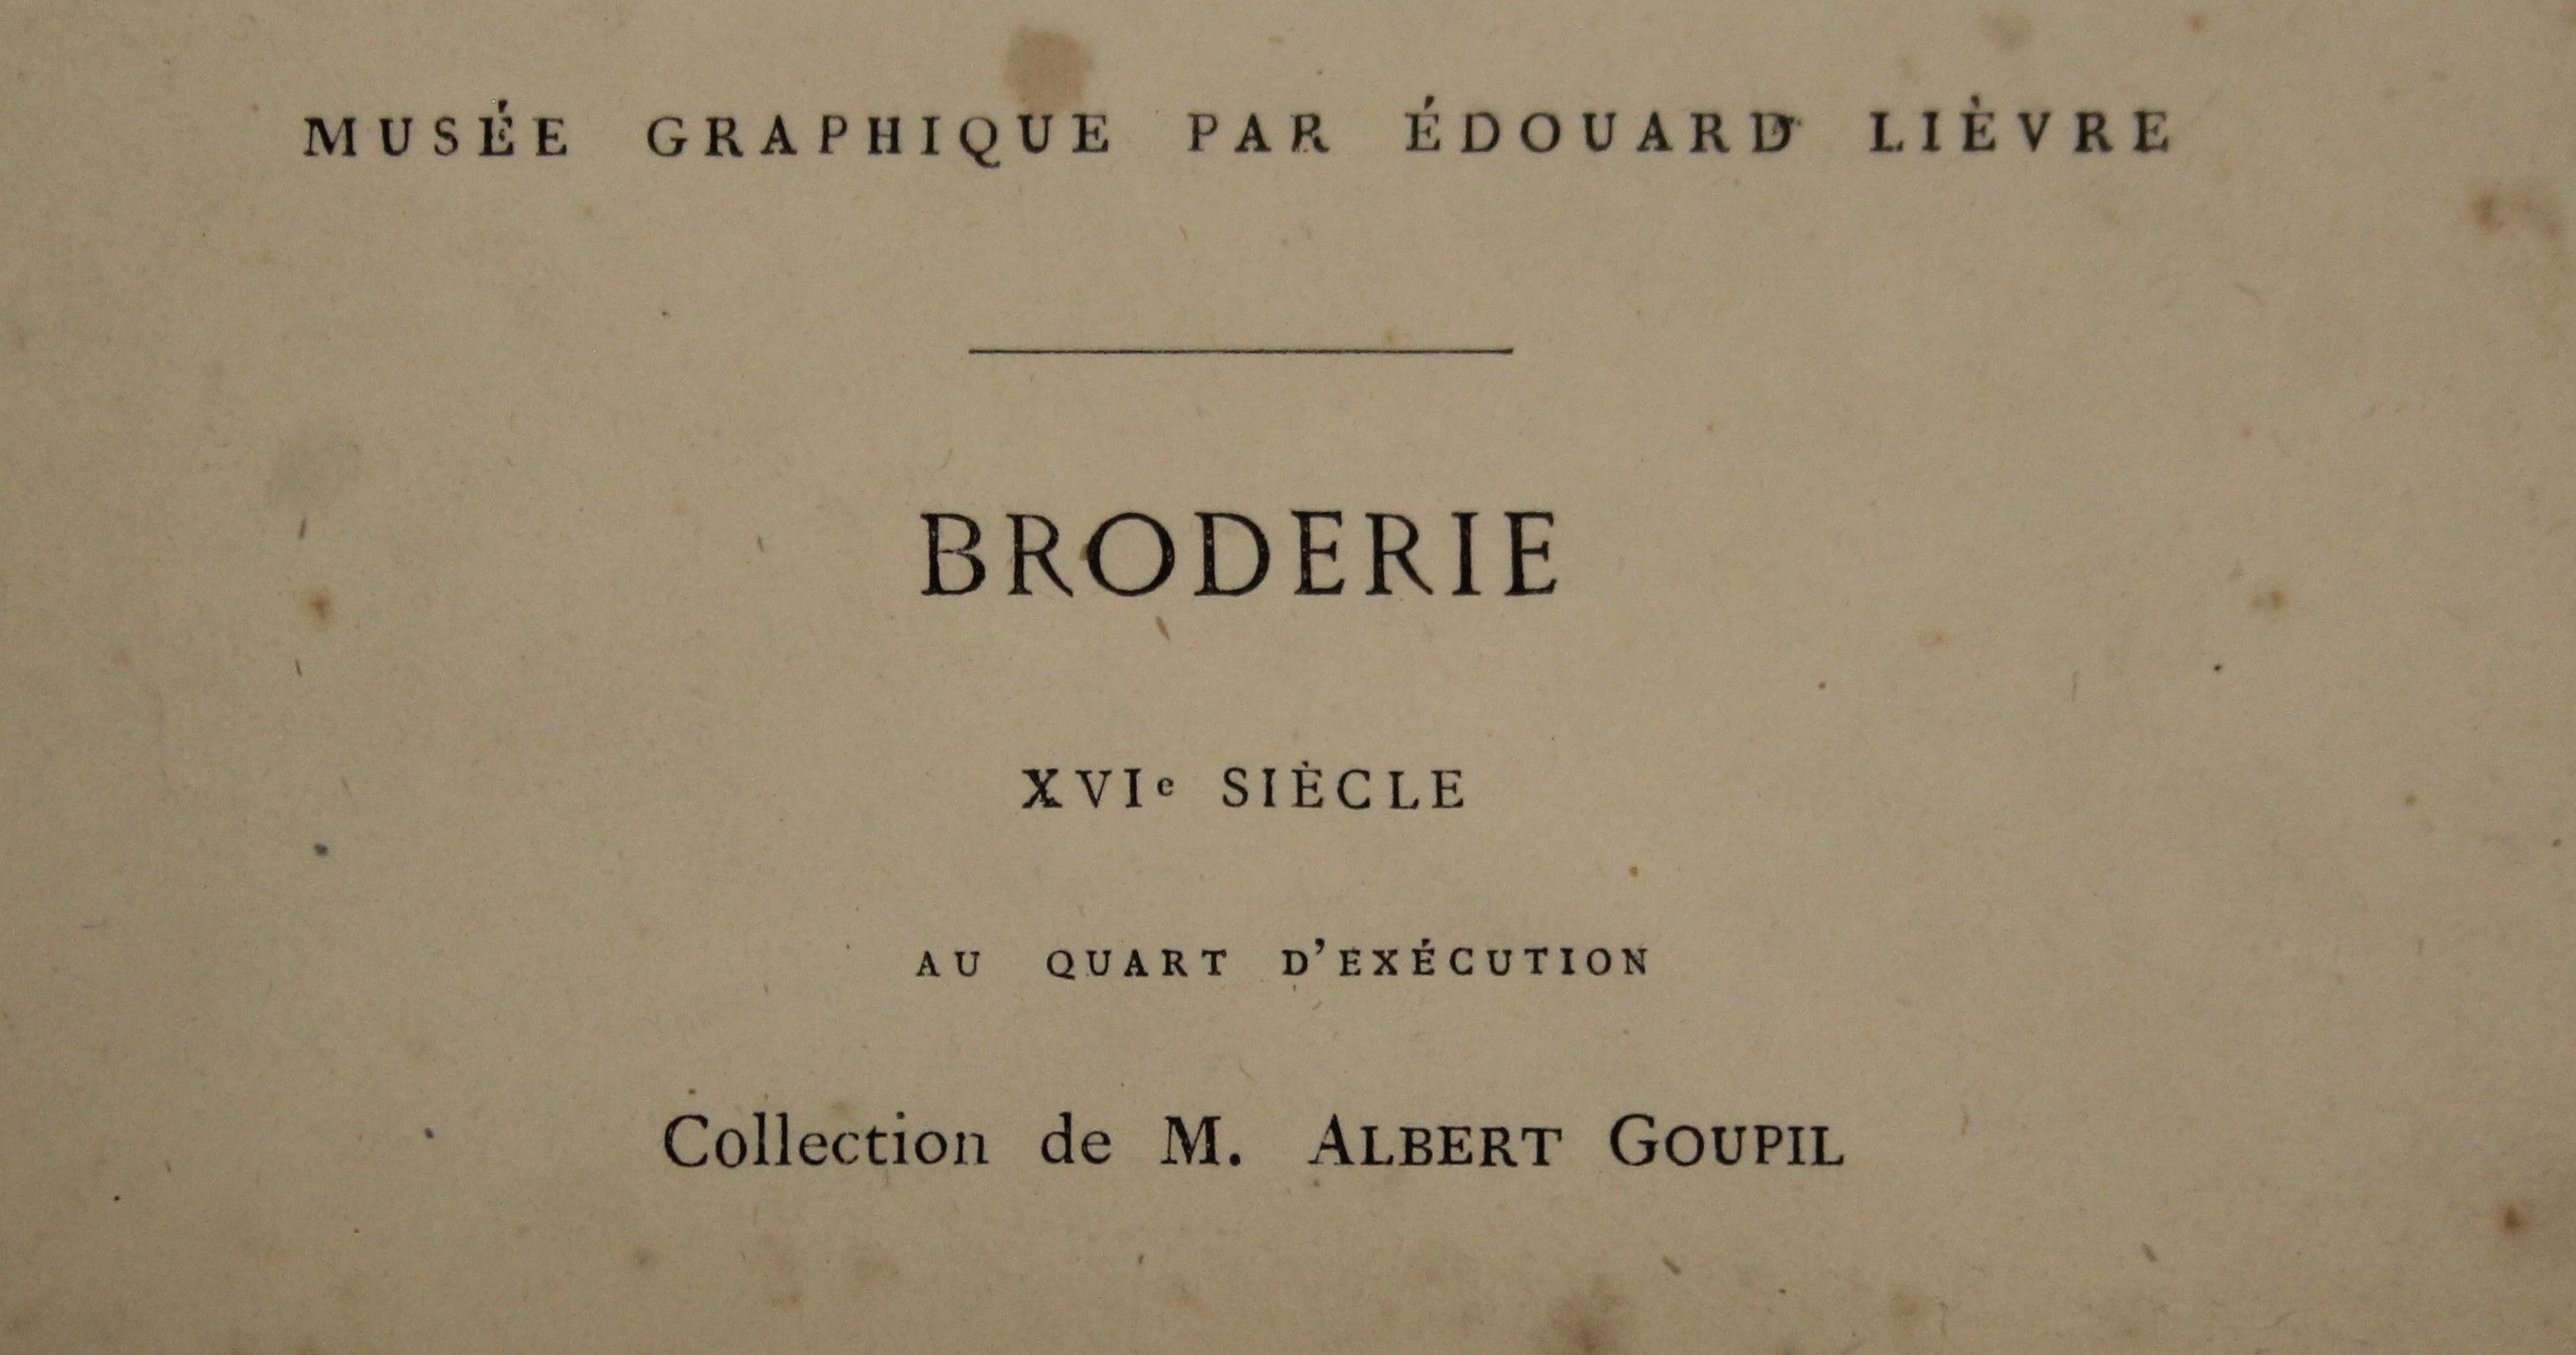 Lievre (Edouard), Musee Graphique Pour L'Etude de L'Art dans Toutes des Applications, - Image 19 of 23